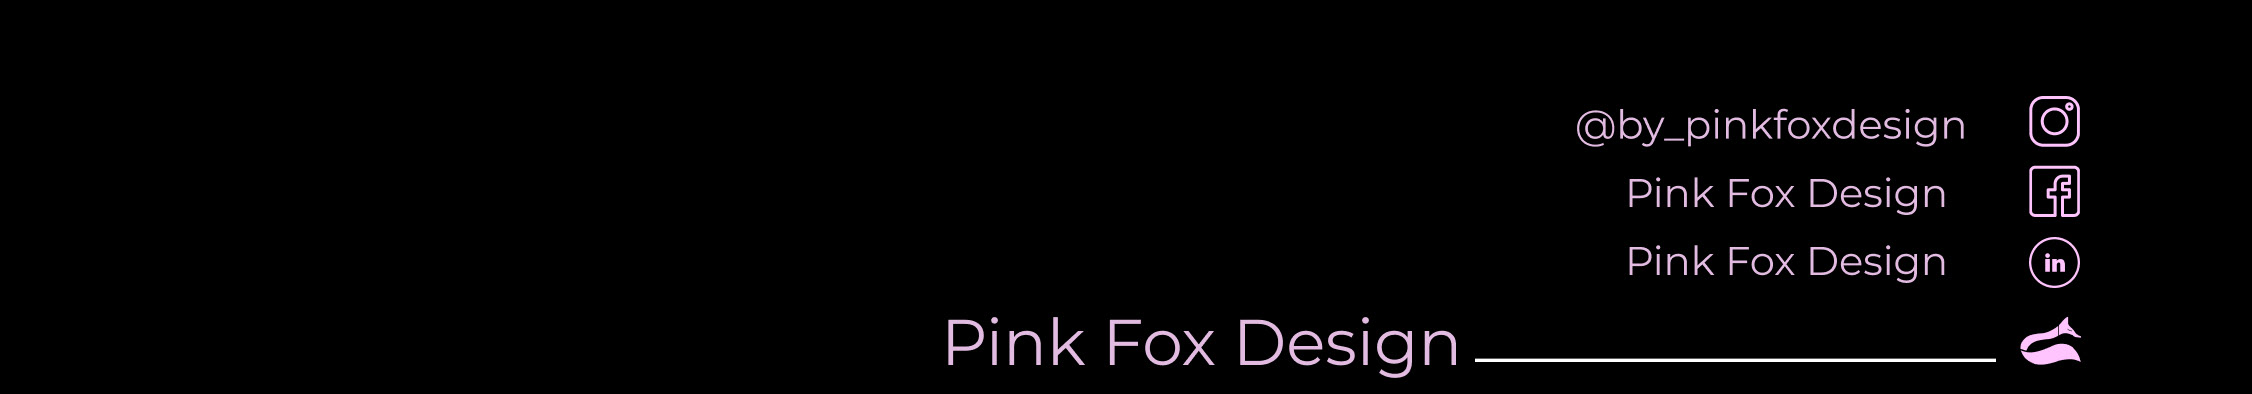 Profil-Banner von Pink Fox